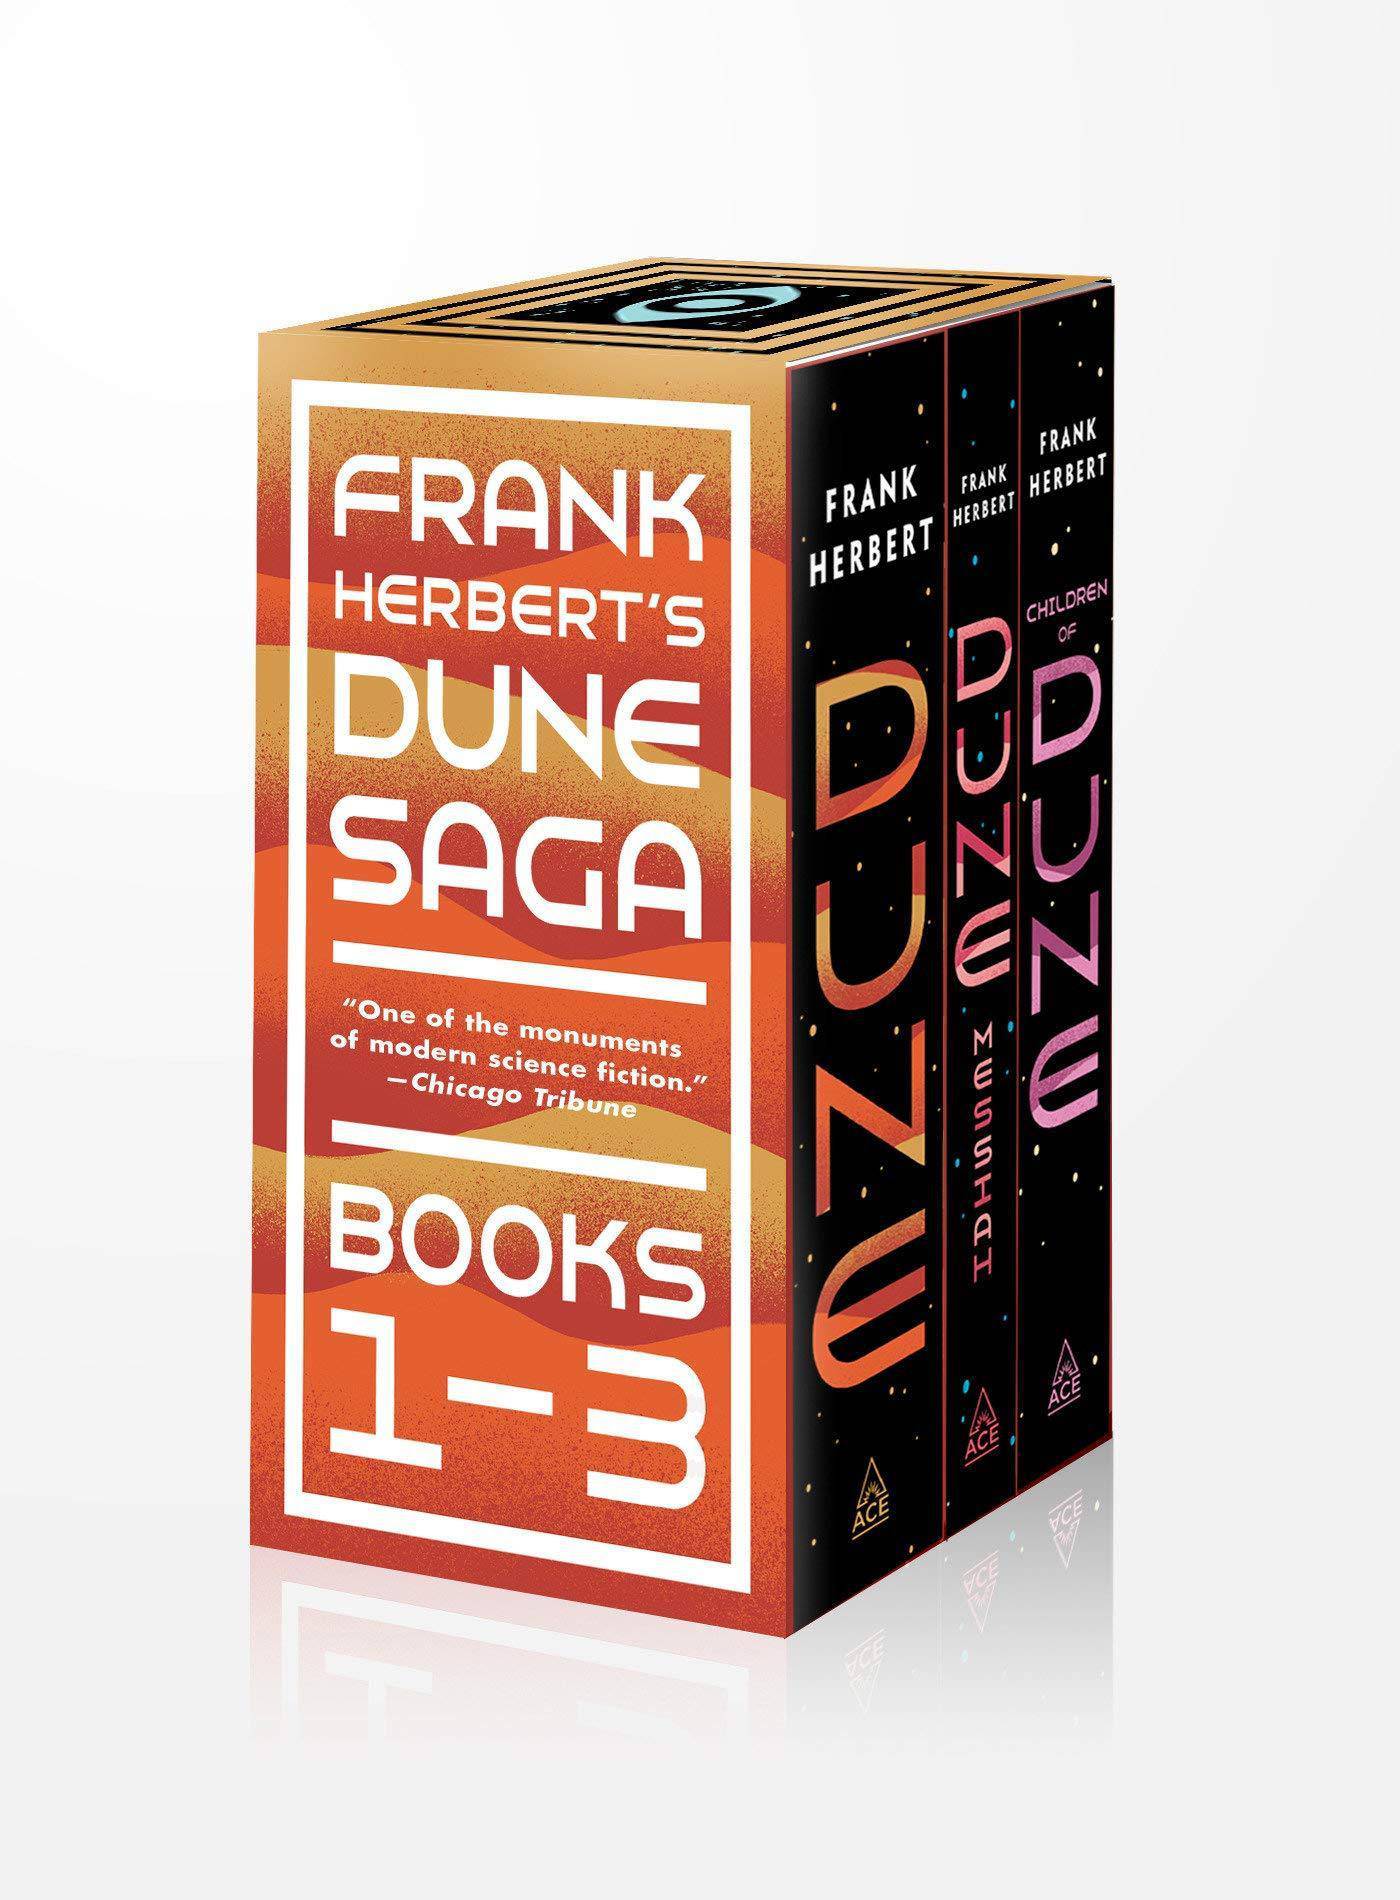 Frank Herbert's Dune Saga 3-Book Boxed Set: Dune, Dune Messiah, and Children of Dune - SureShot Books Publishing LLC